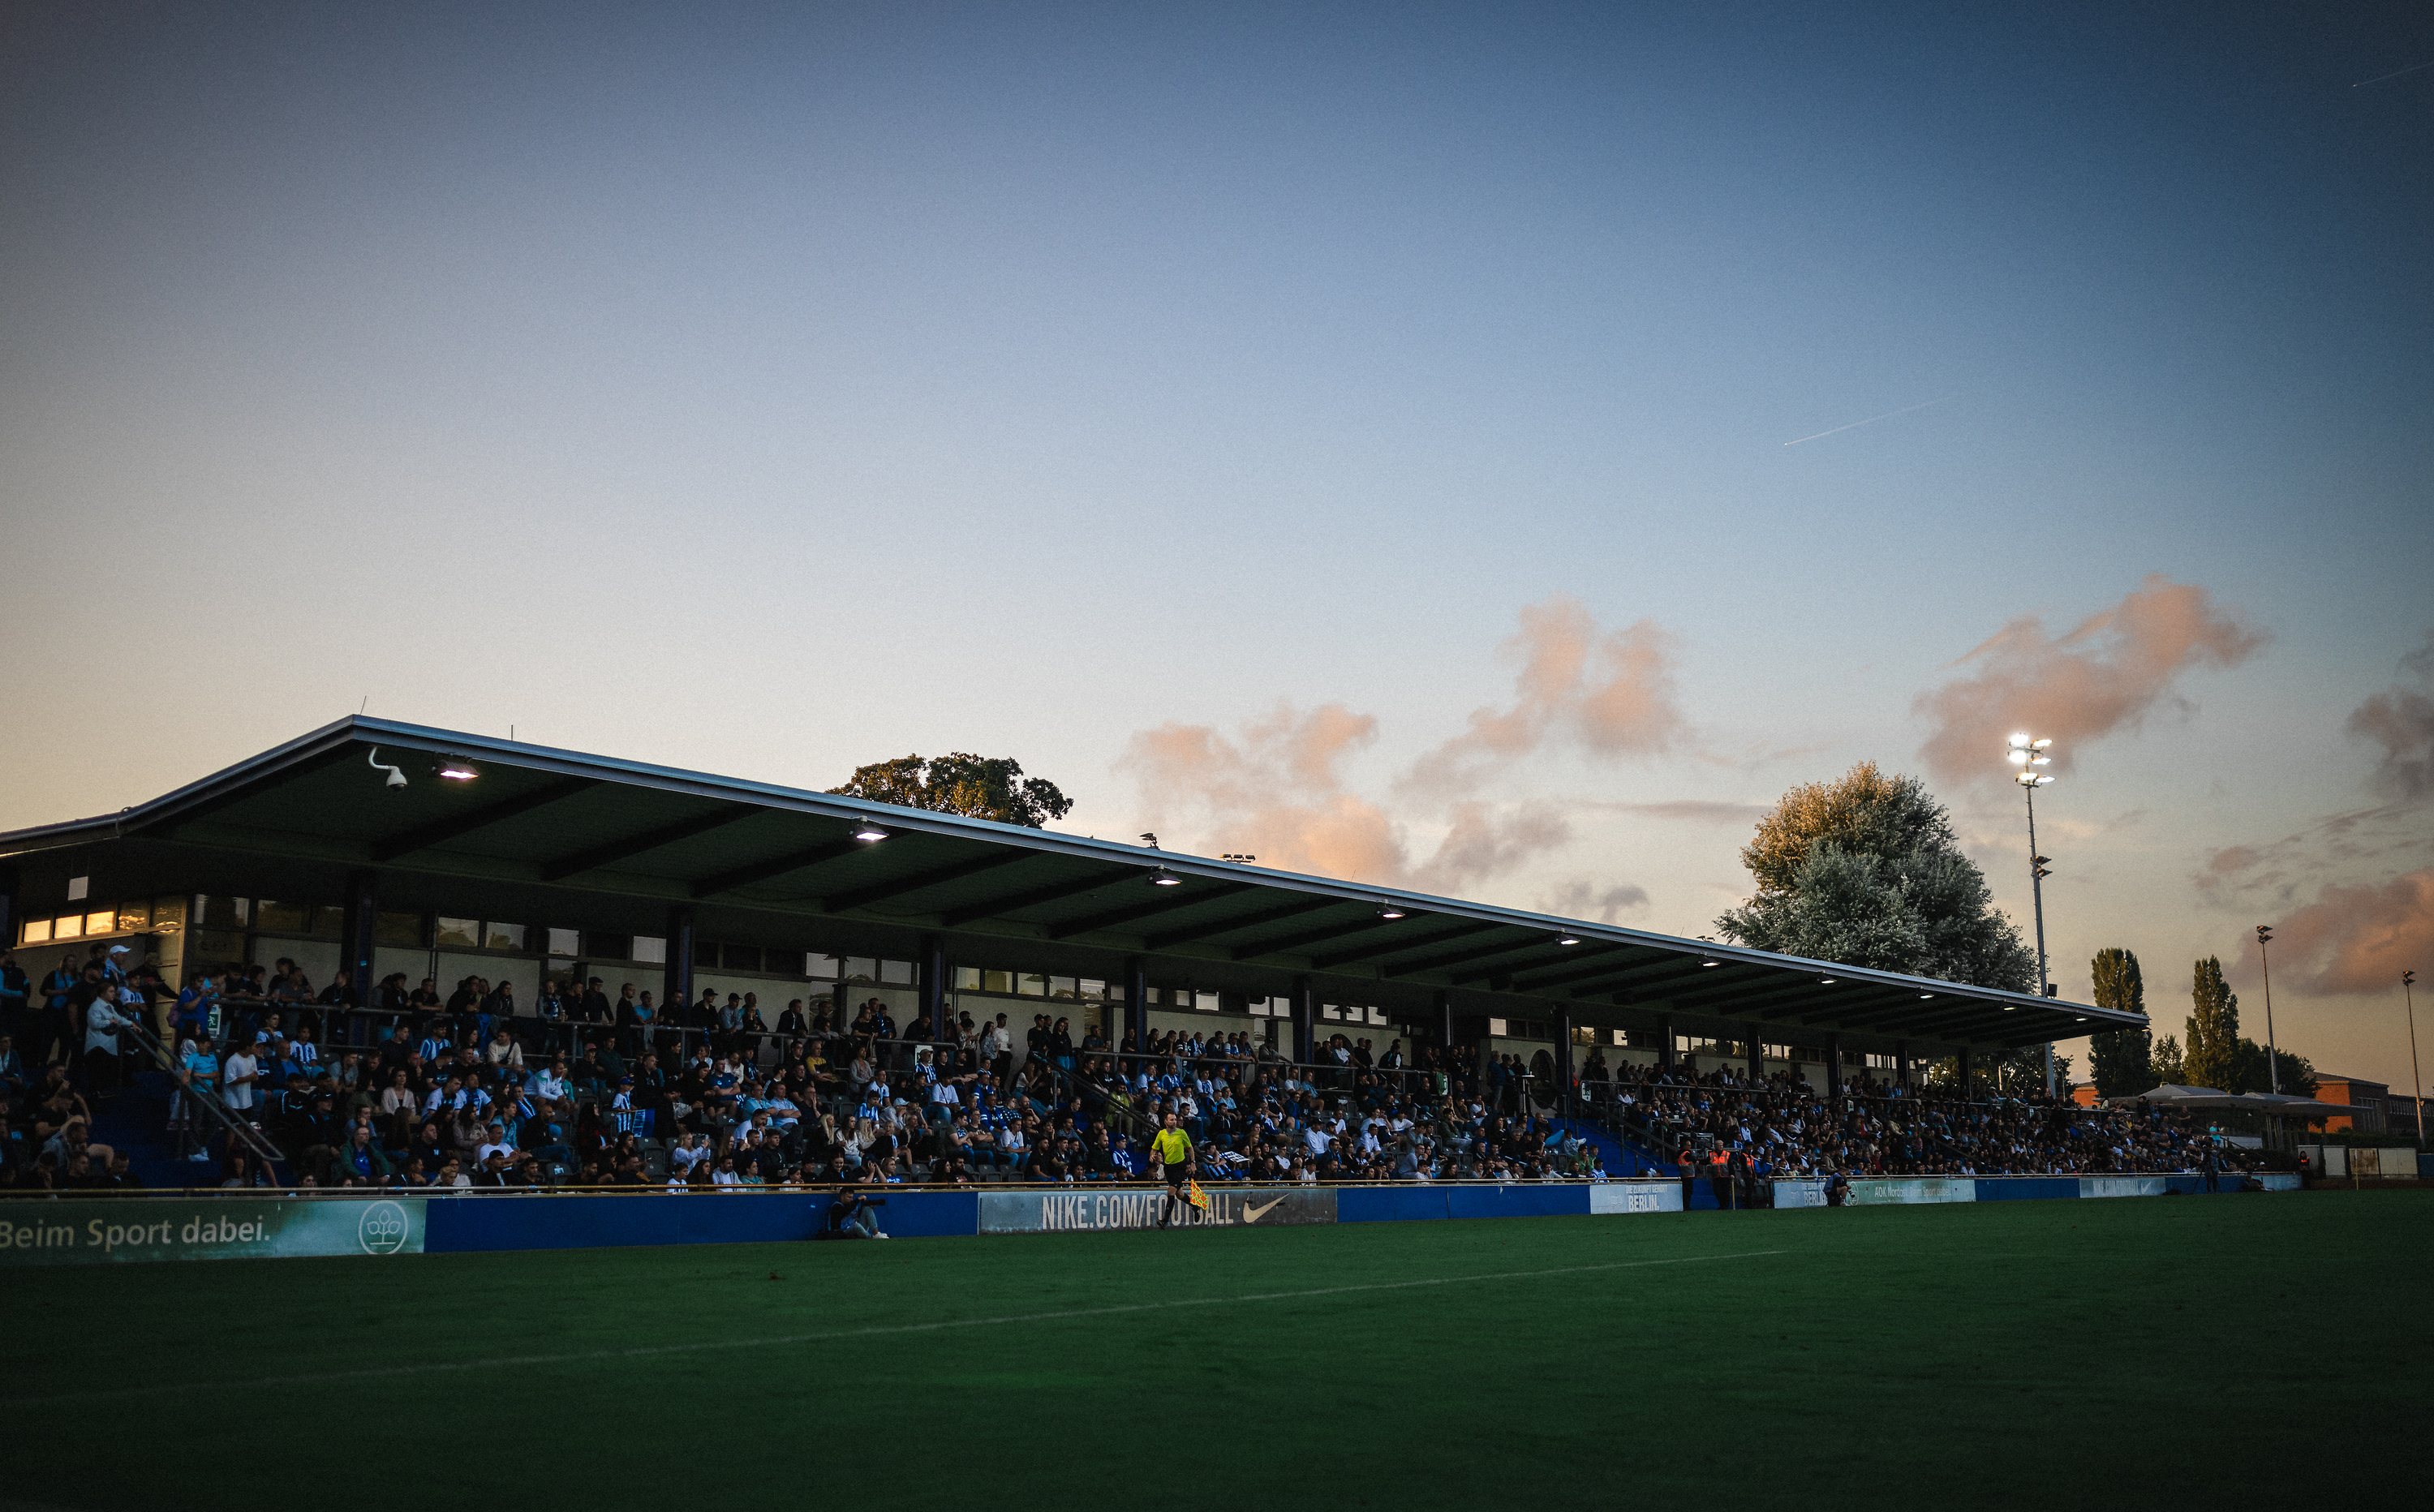 Das Stadion auf dem Wurfplatz/Amateurstadion während des Sonnenuntergangs.